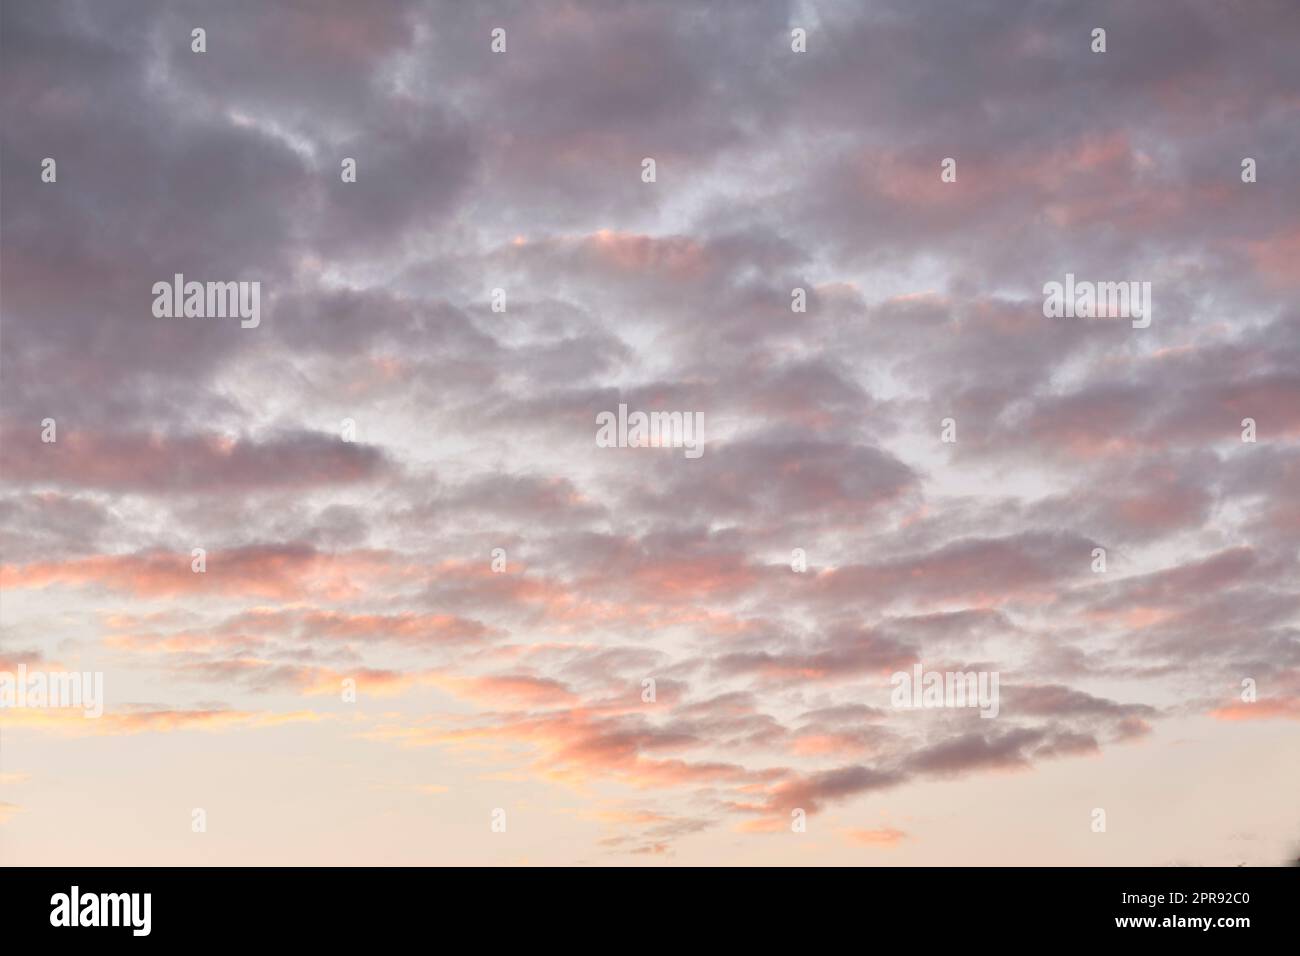 Copier l'espace des nuages d'altocumulus dans un ciel de moody au crépuscule. Panoramique panoramique d'un paysage de nuages et d'un fond orageux au lever ou au coucher du soleil. Climat sombre et sombre à l'aube à l'extérieur Banque D'Images